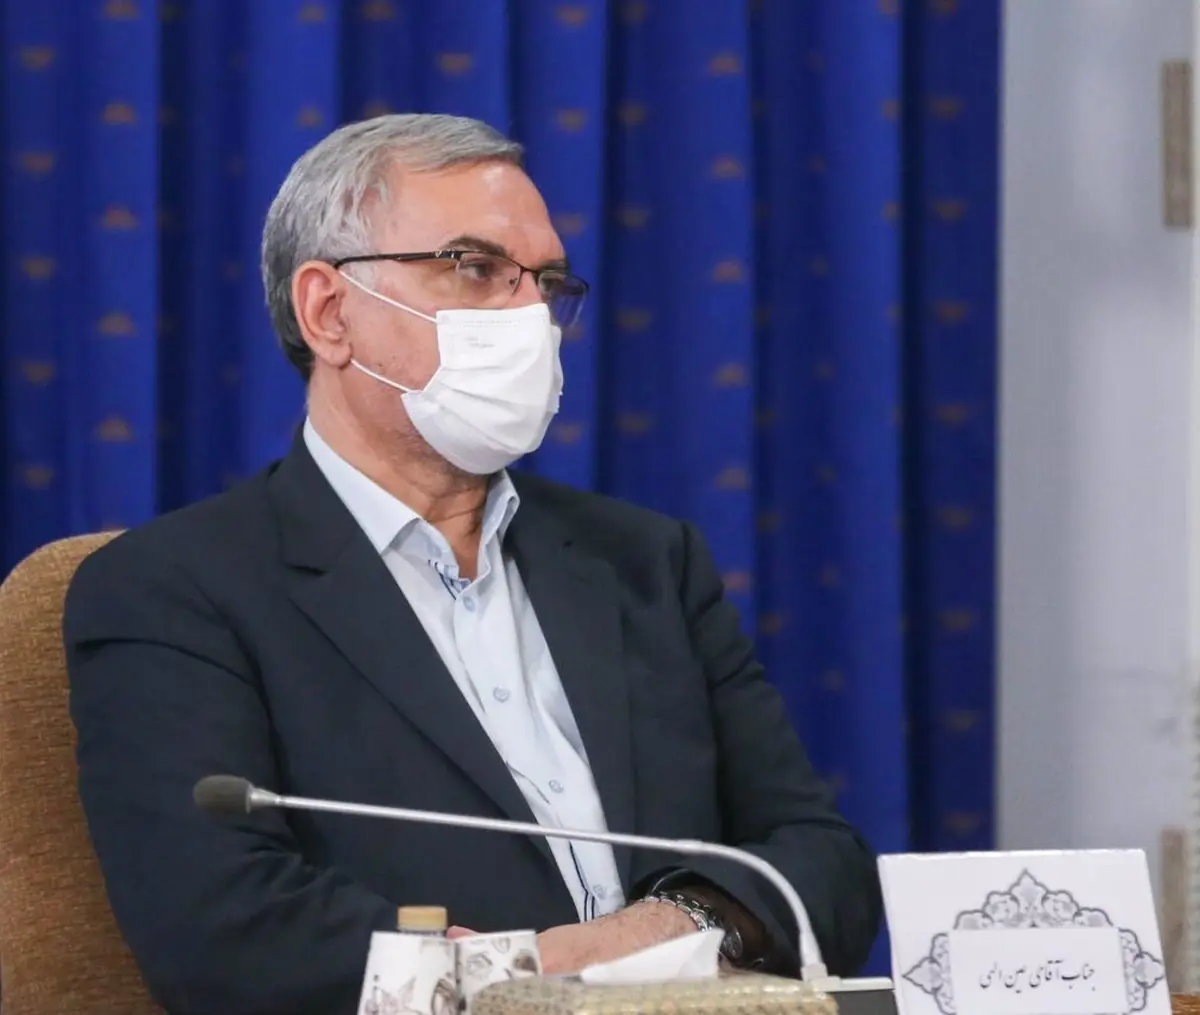 کاشت ناخن و مژه برای تمامی پرسنل بیمارستانی ممنوع شد | صحبت های بهرام عین اللهی وزیر بهداشت در اینباره چیست؟